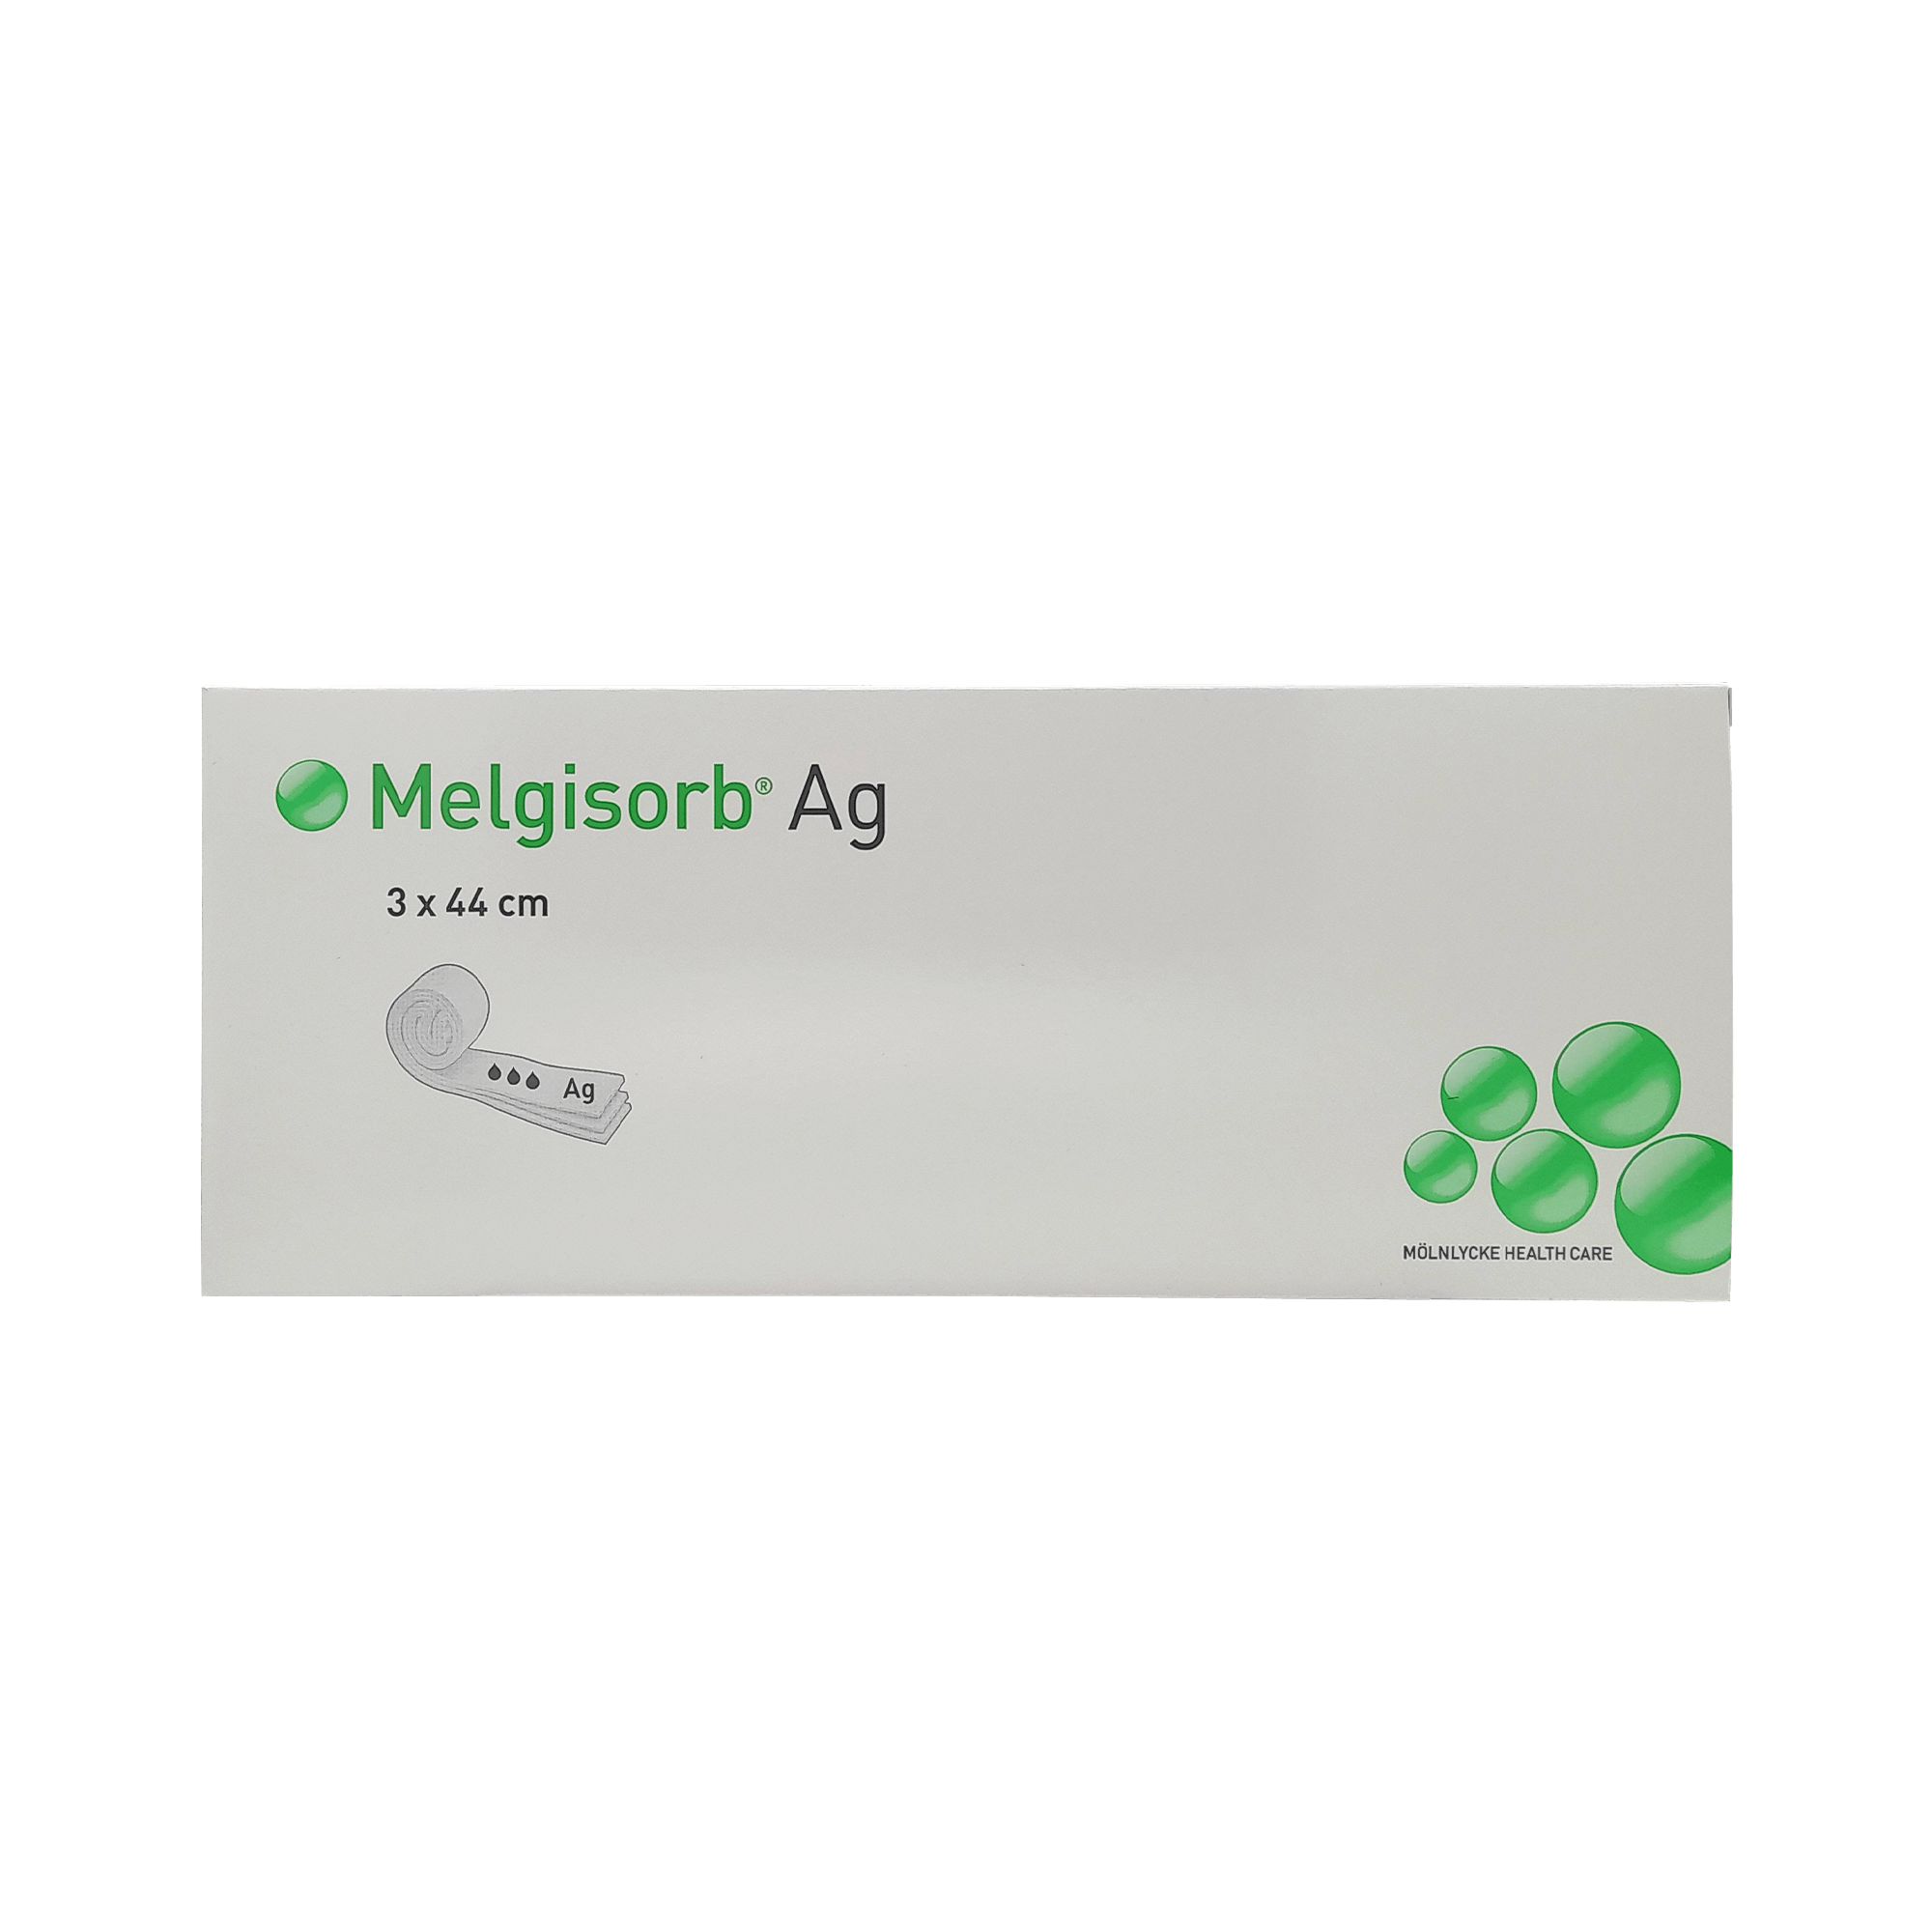 Melgisorb® Ag 3 x 44 cm